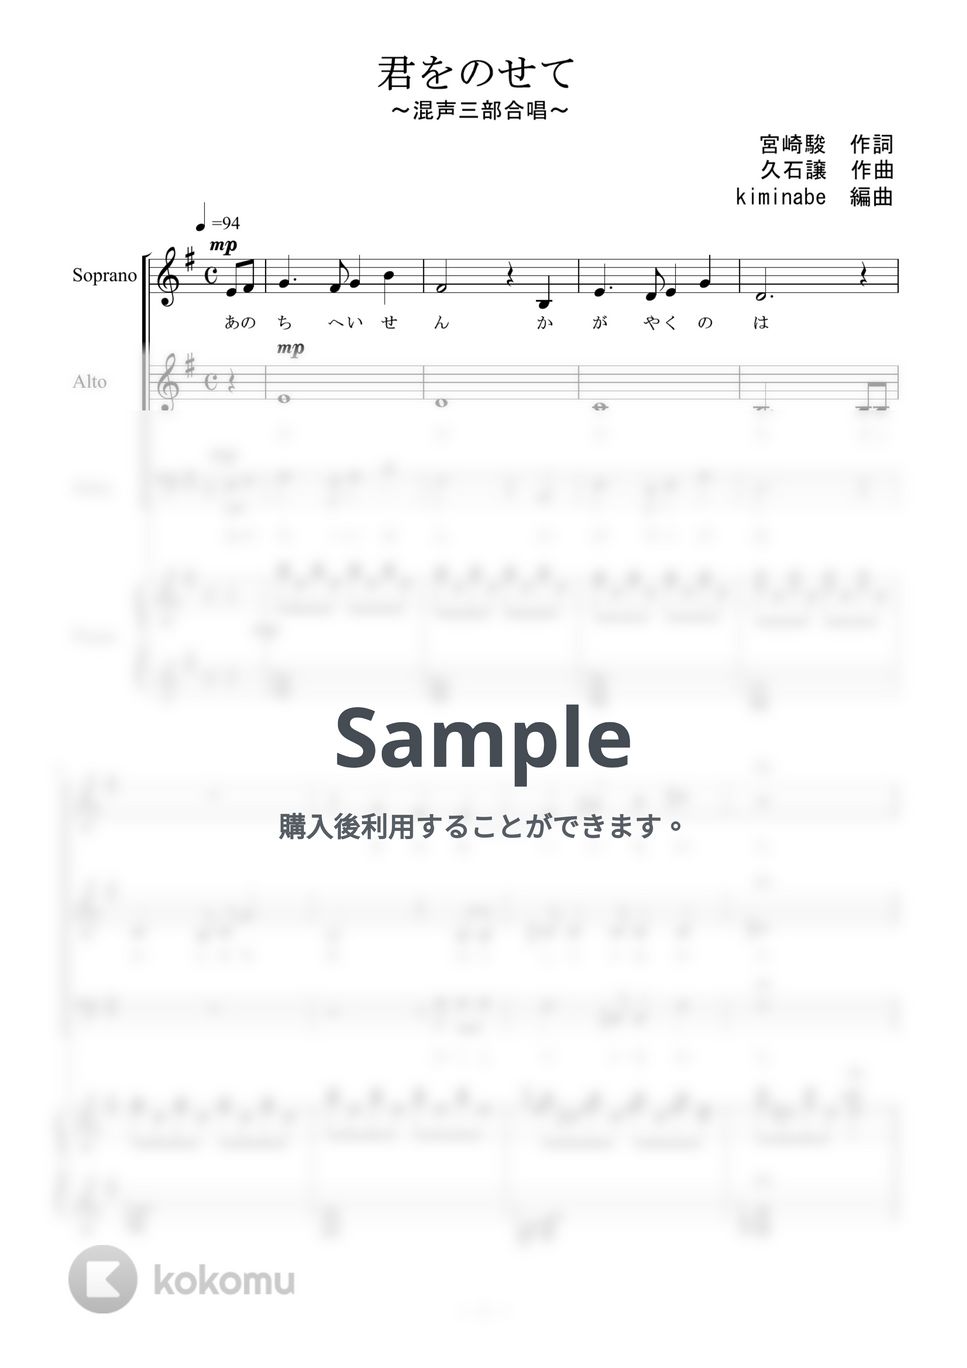 天空の城ラピュタ - 君をのせて (混声三部合唱) by kiminabe